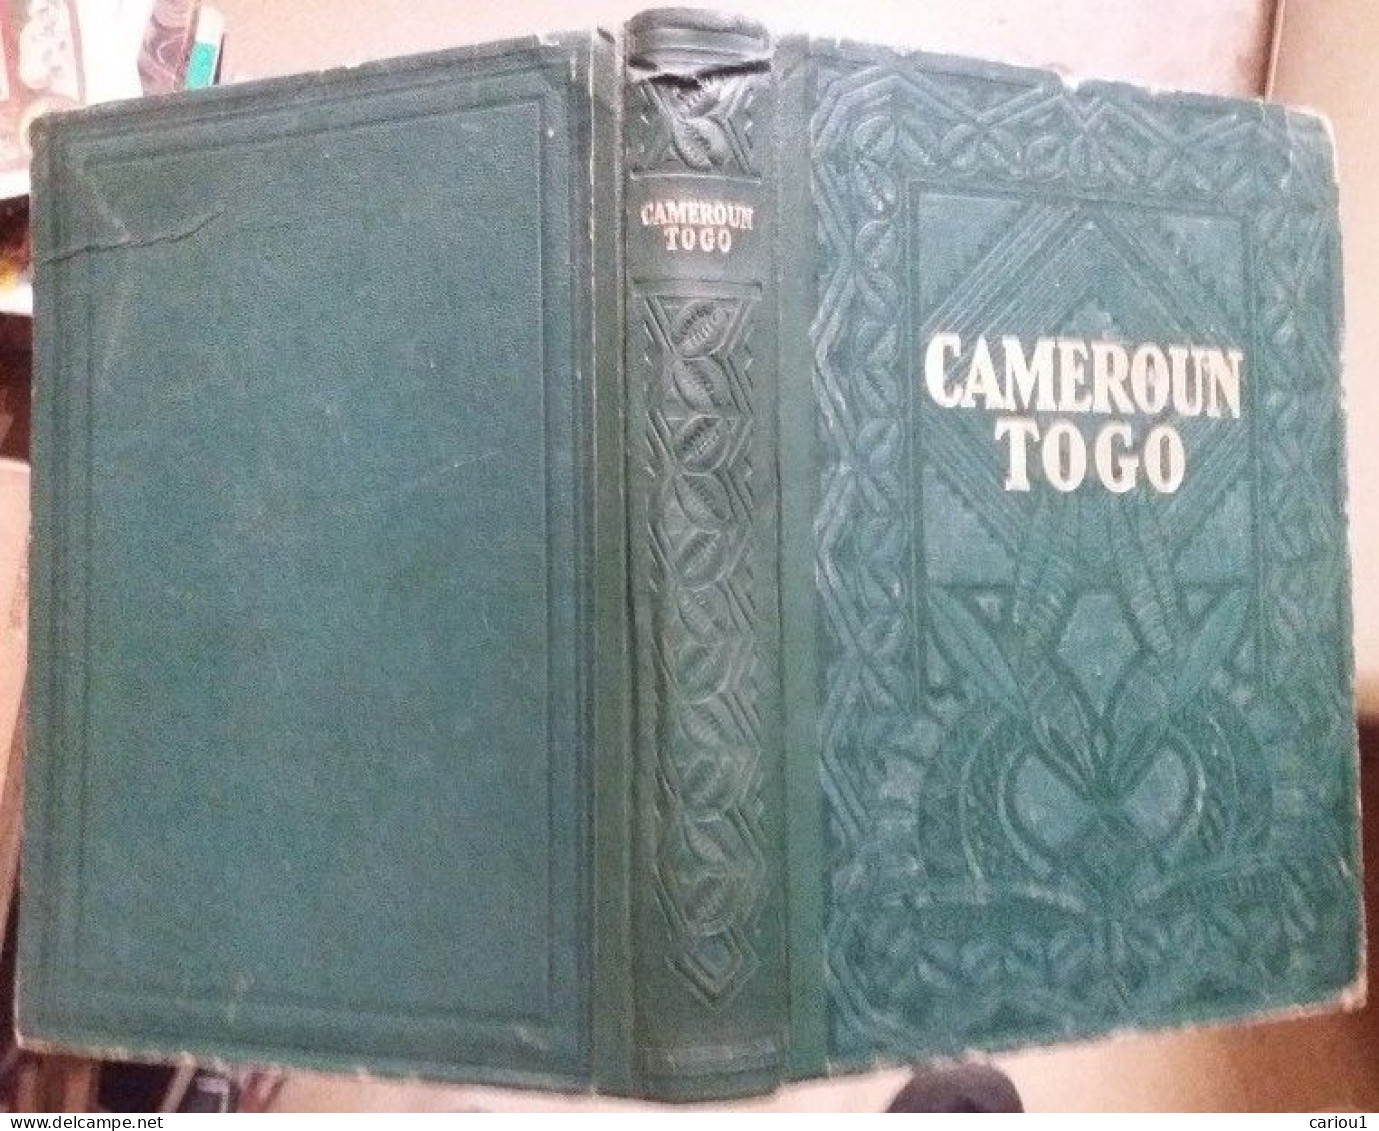 C1 AFRIQUE Guernier CAMEROUN TOGO Encyclopedie Coloniale 1951 RELIE Illustre Port Inclus France - Géographie